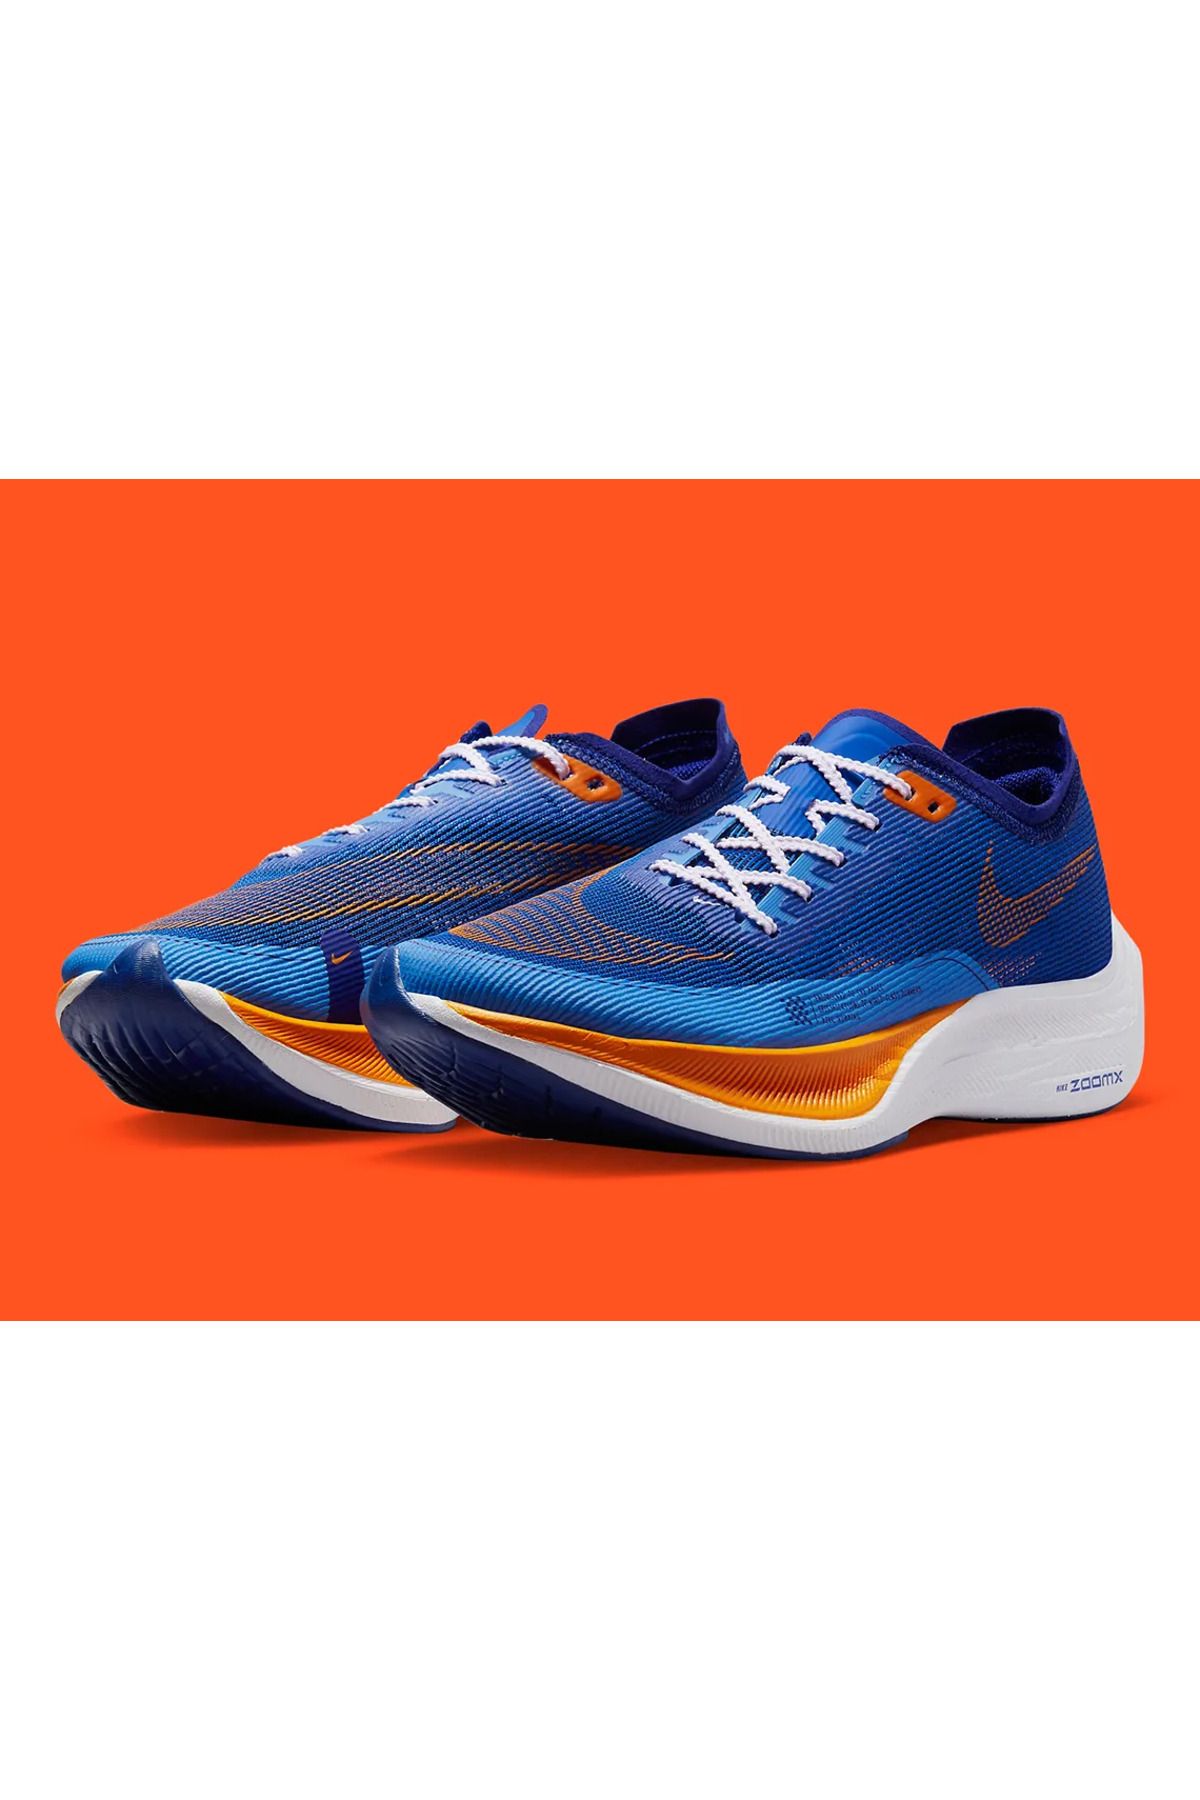 Nike ZoomX VaporFly NEXT% 2 Blue Orange